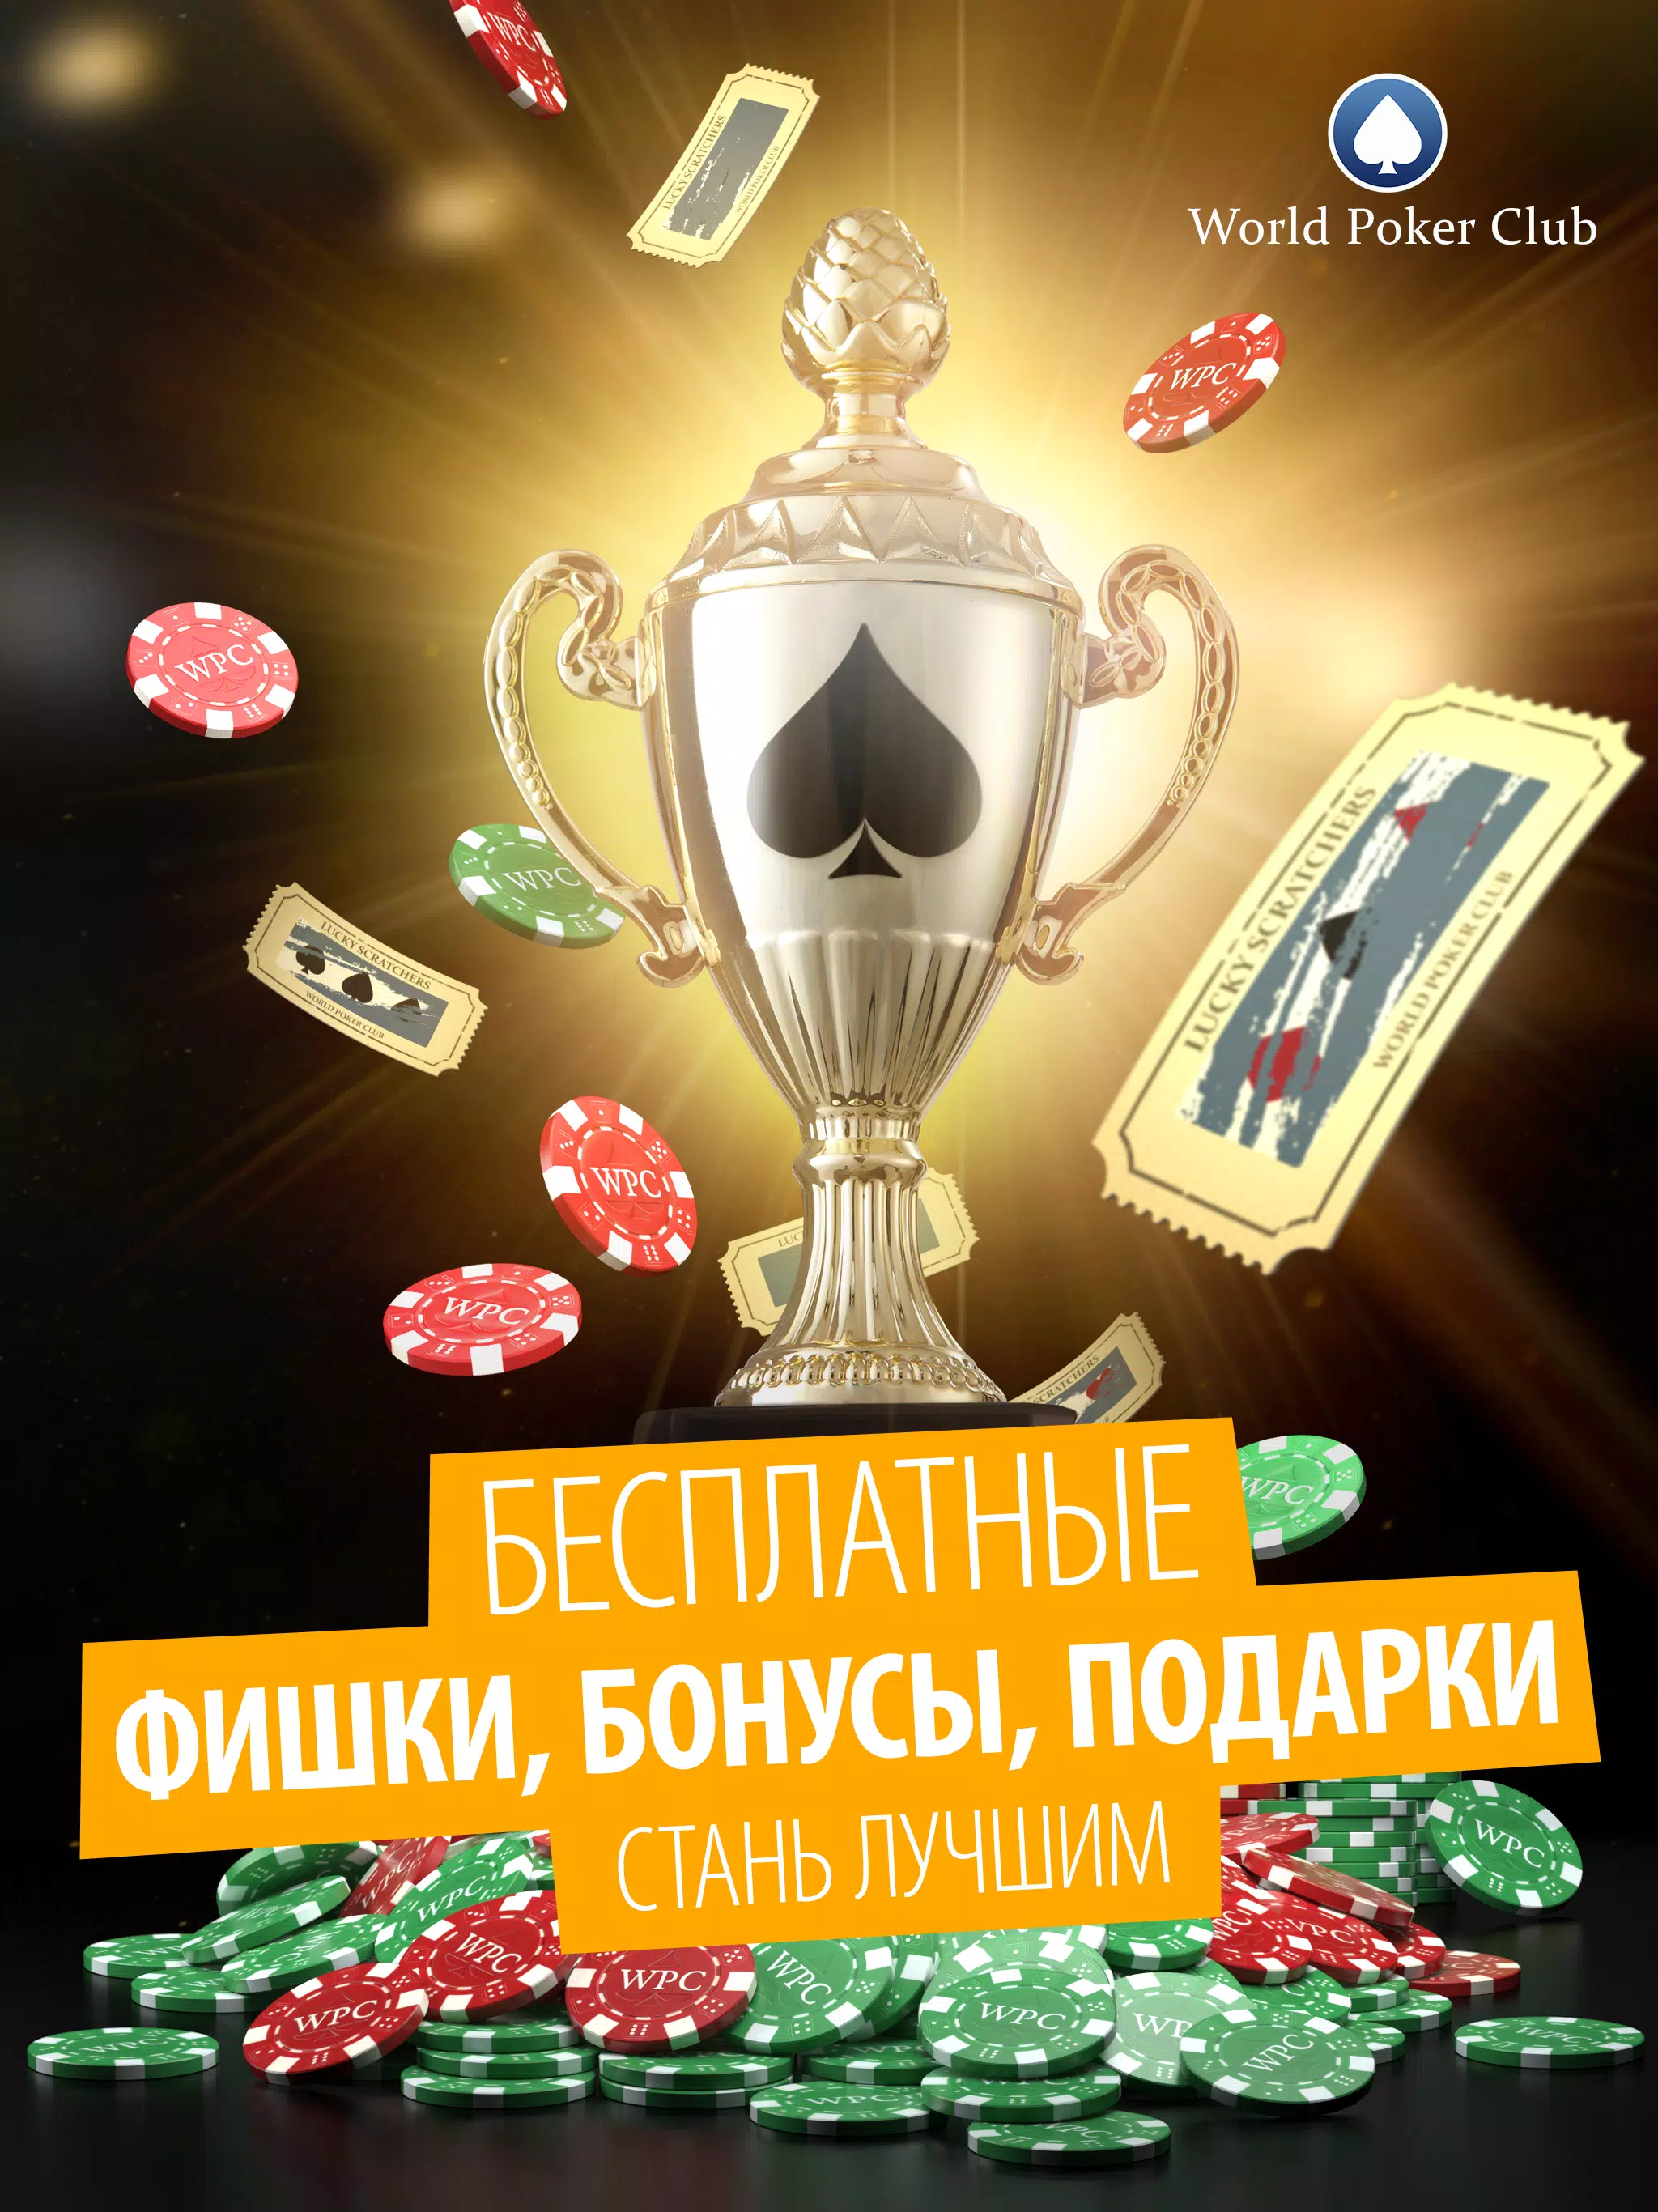 Скачать Poker Game: World Poker Club APK для Android